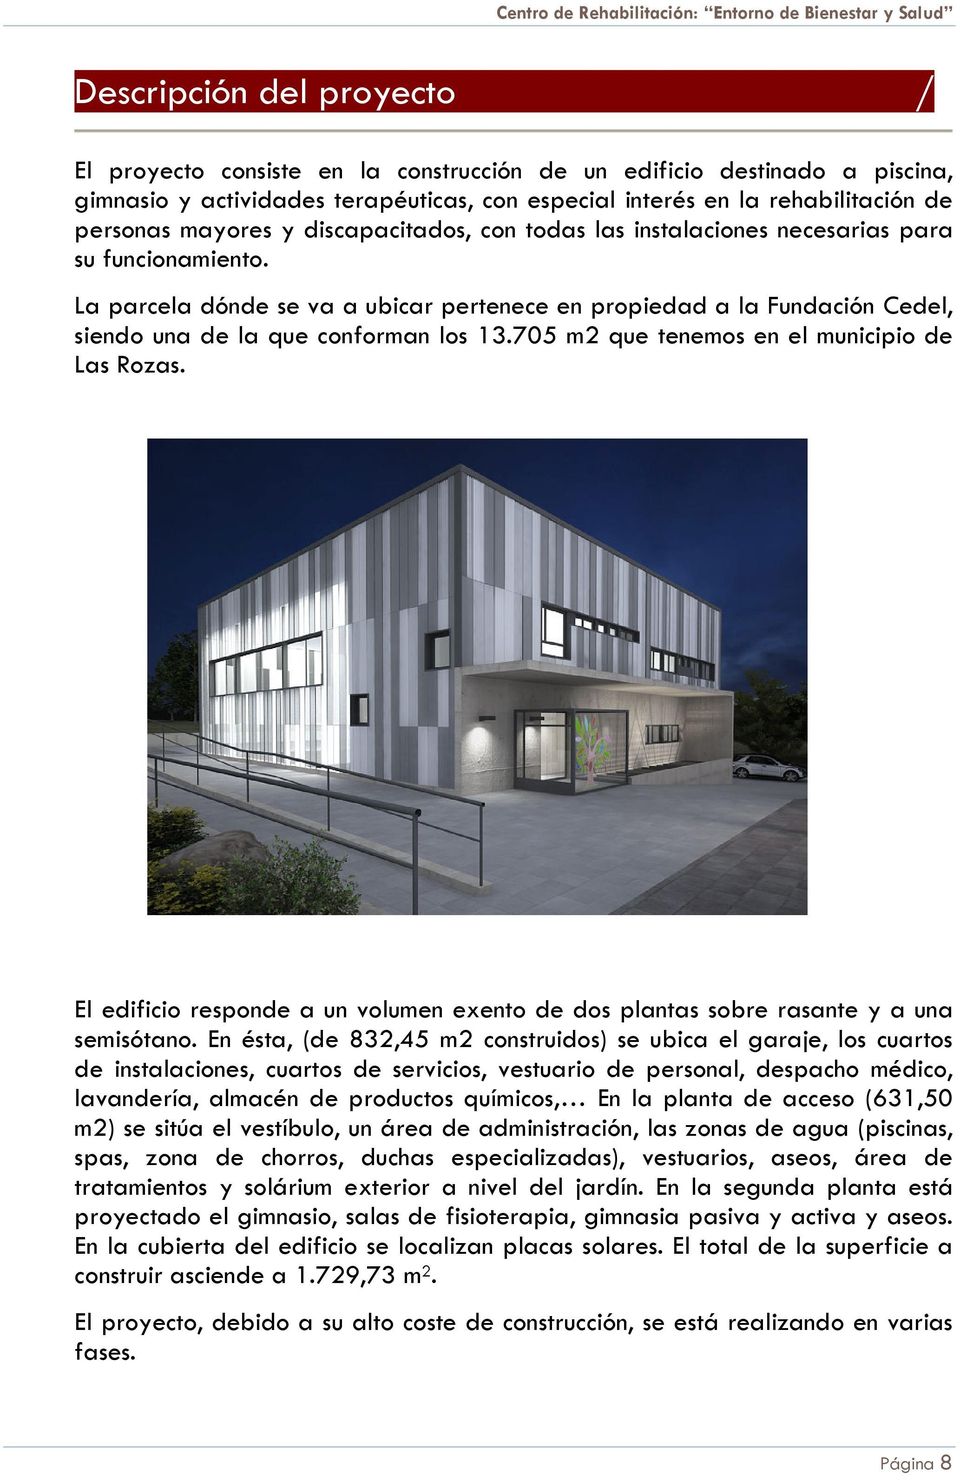 La parcela dónde se va a ubicar pertenece en propiedad a la Fundación Cedel, siendo una de la que conforman los 13.705 m2 que tenemos en el municipio de Las Rozas.